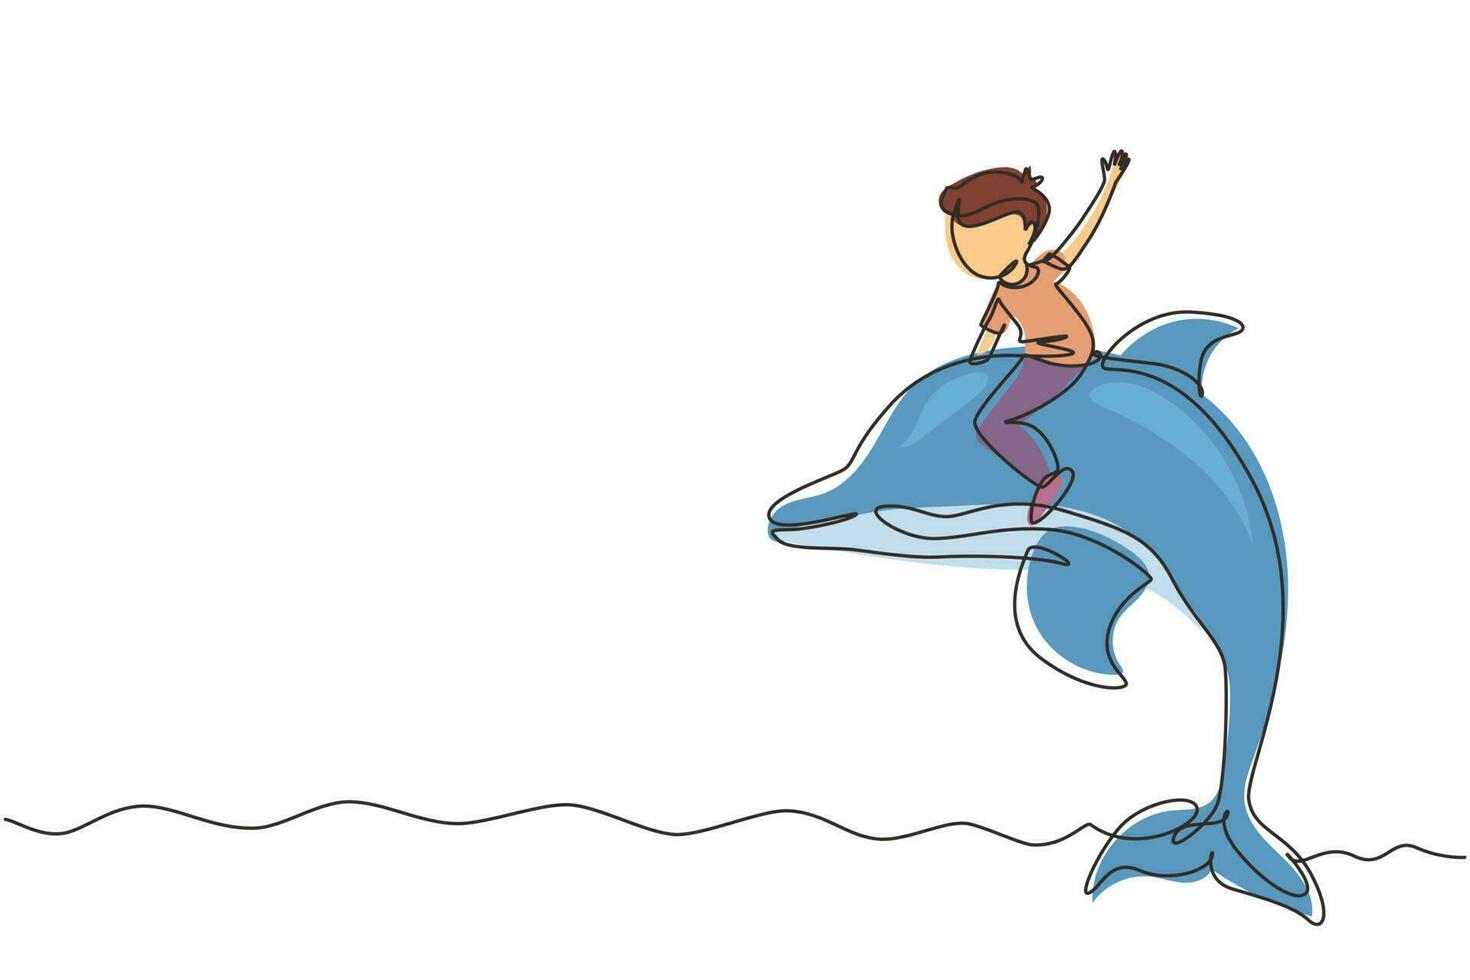 unico disegno a linea continua ragazzino che cavalca un delfino. ragazzino seduto sul retro delfino in piscina. bambini con delfini che nuotano in acqua. illustrazione vettoriale di un disegno grafico a una linea